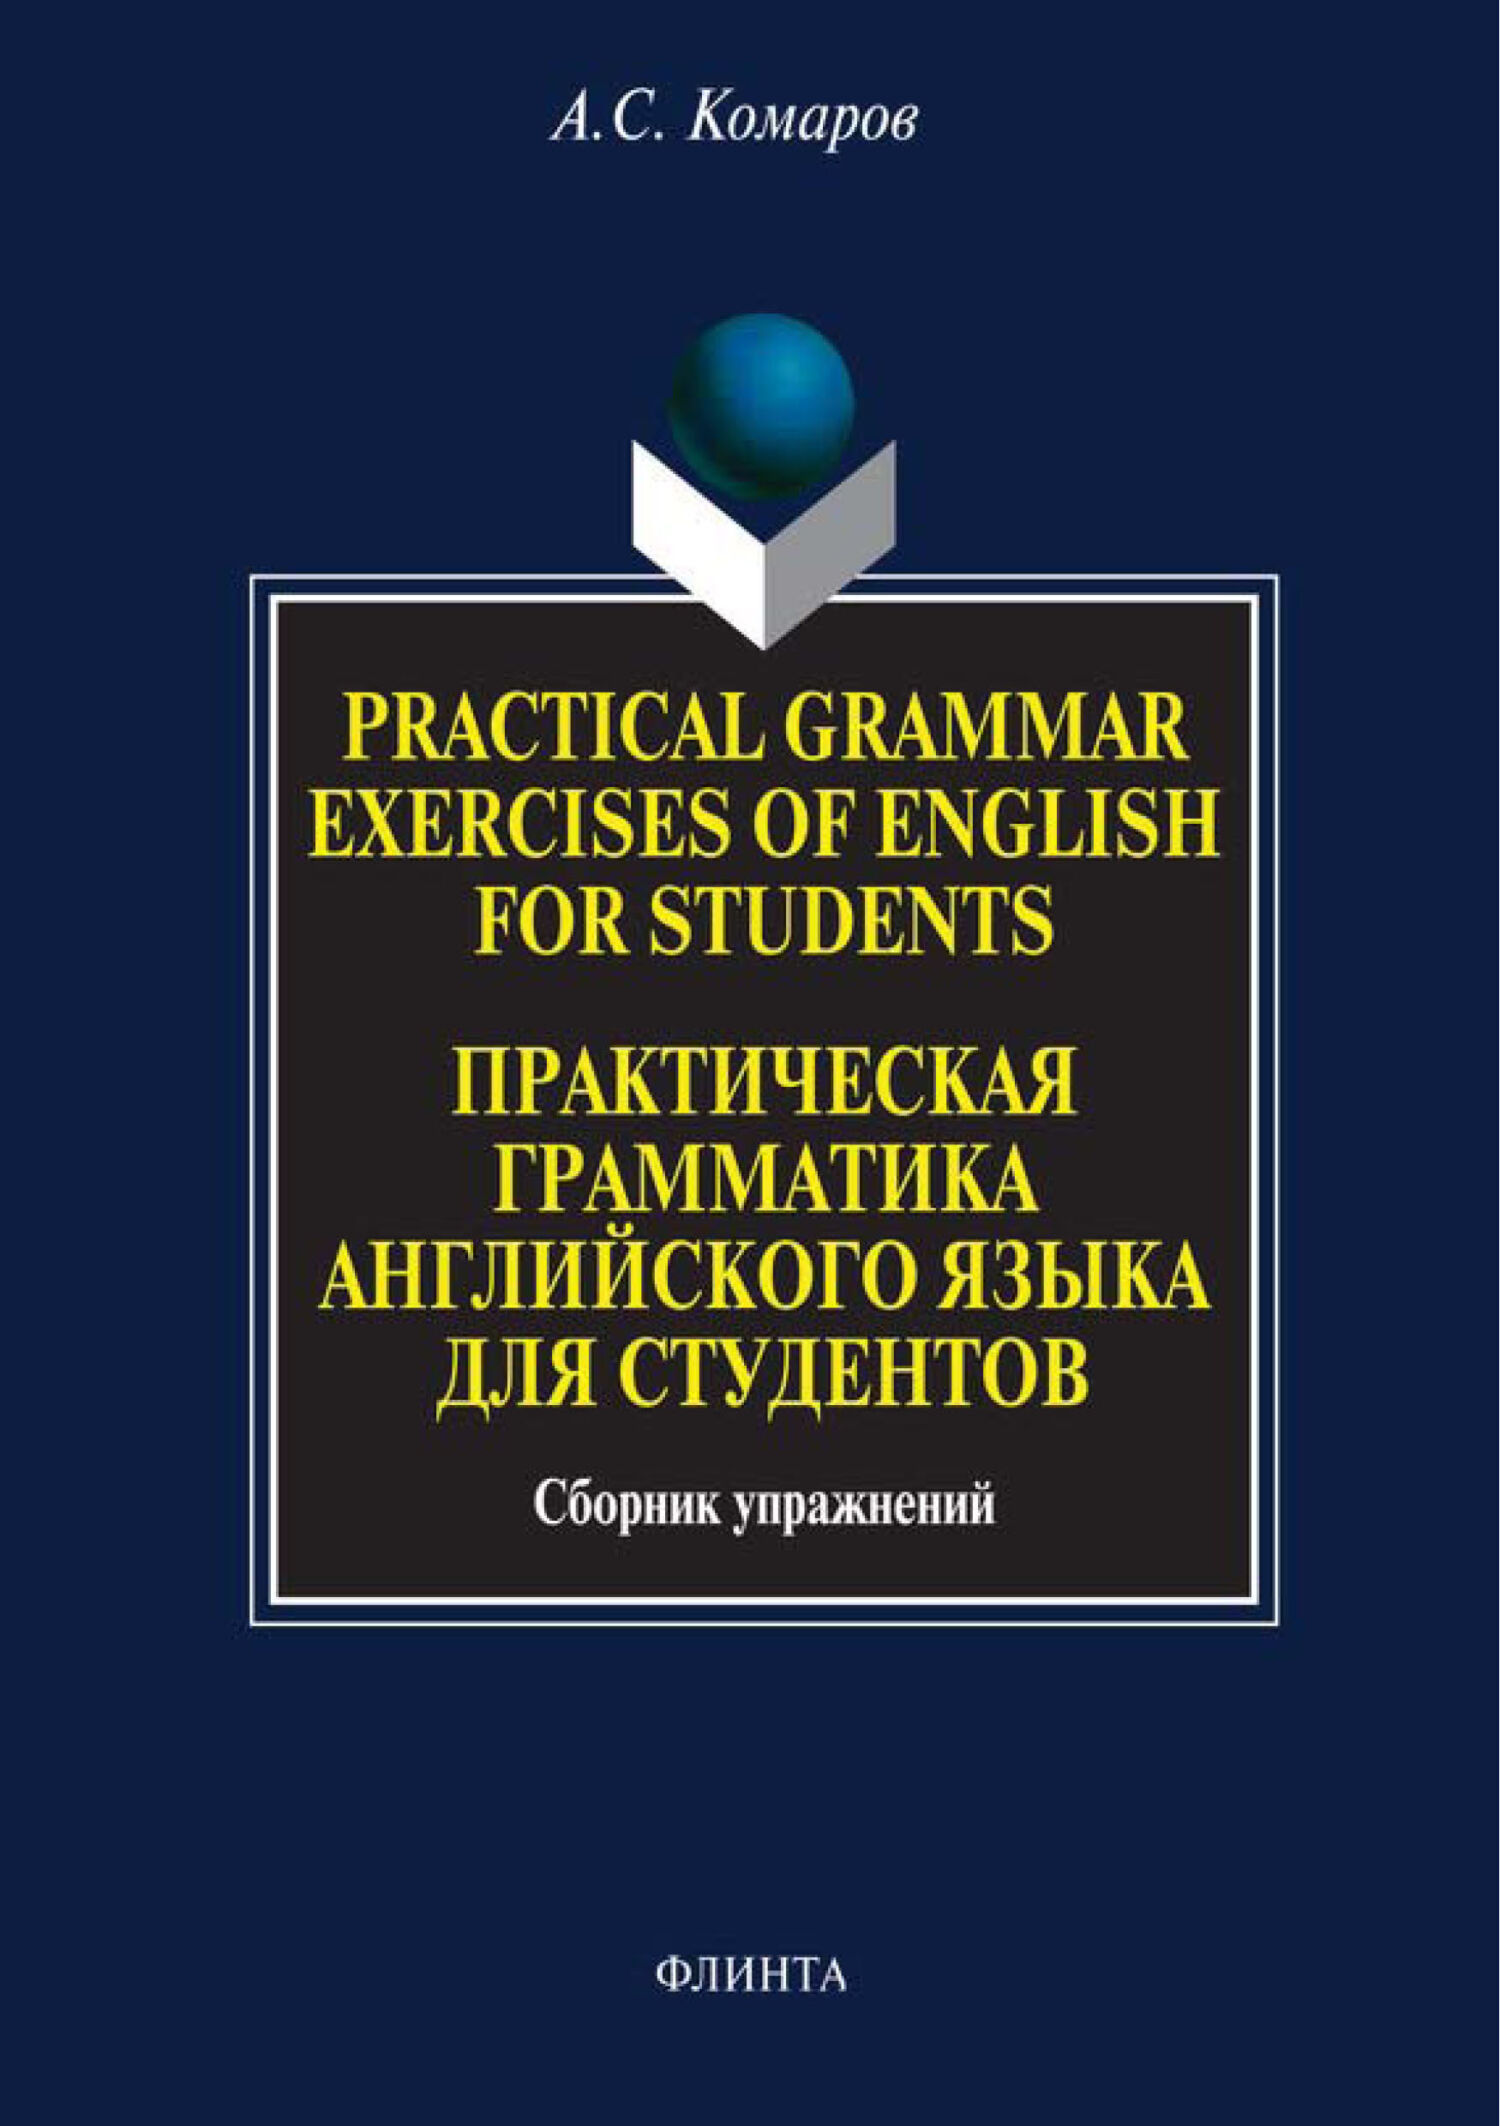 Practical Grammar Exercises of English for Students.Практическая грамматика английского языка для студентов. Сборник упражнений